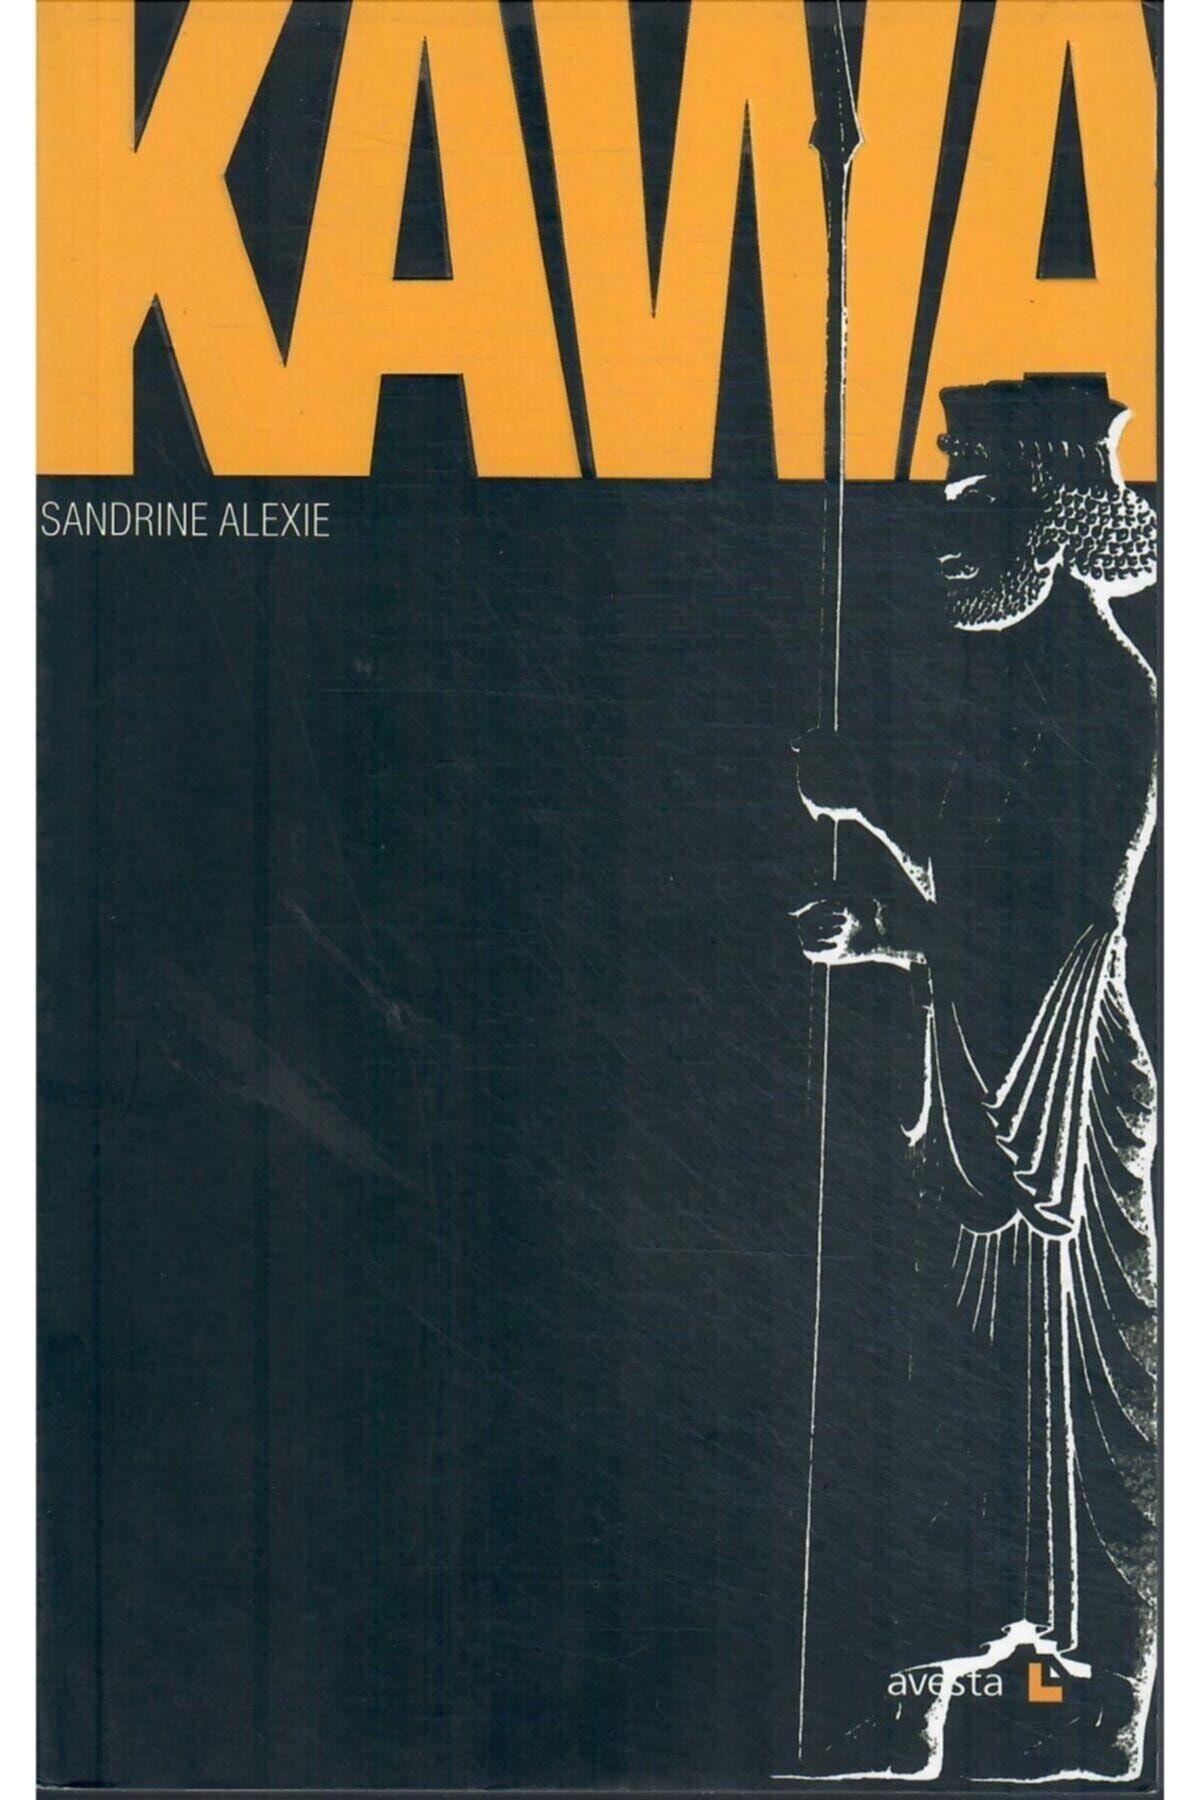 Avesta Yayınları Kawa -sandrine Alexie